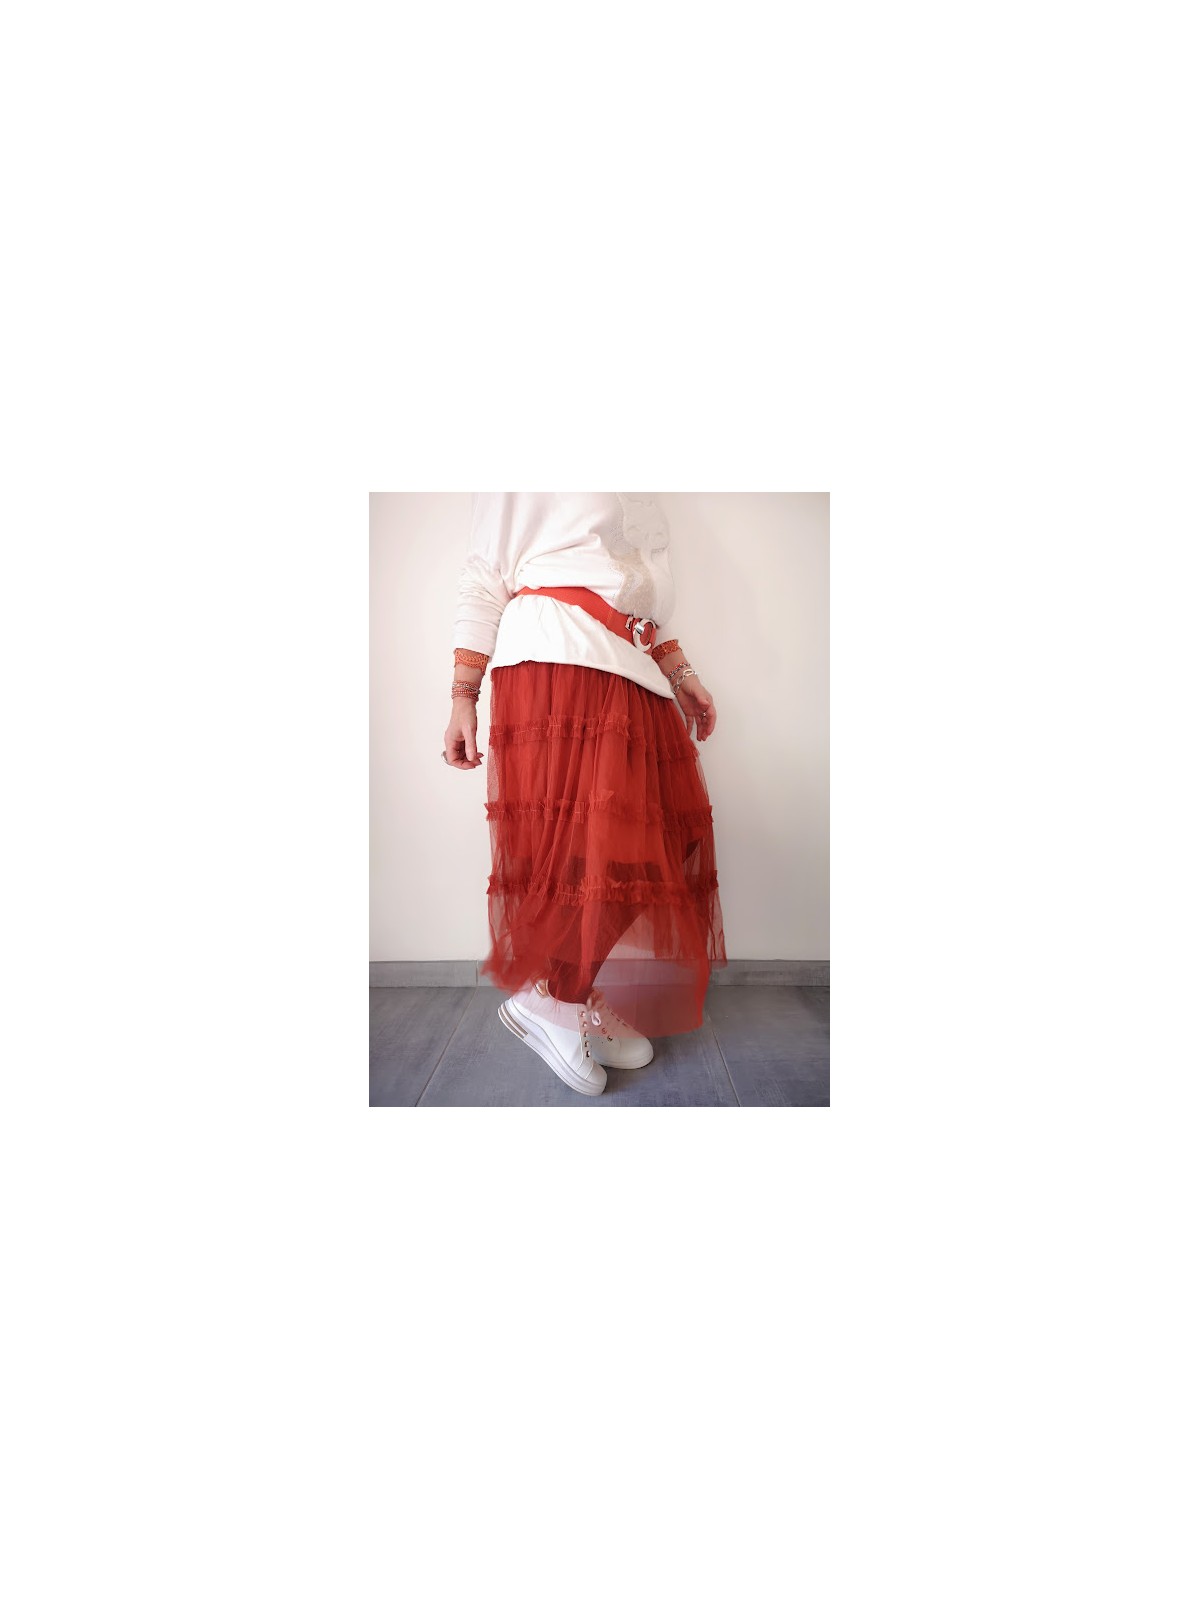 Jupe en tulle terracotta l 2 vue de profil l Tilleulmenthe mode boutique de vêtements femme en ligne